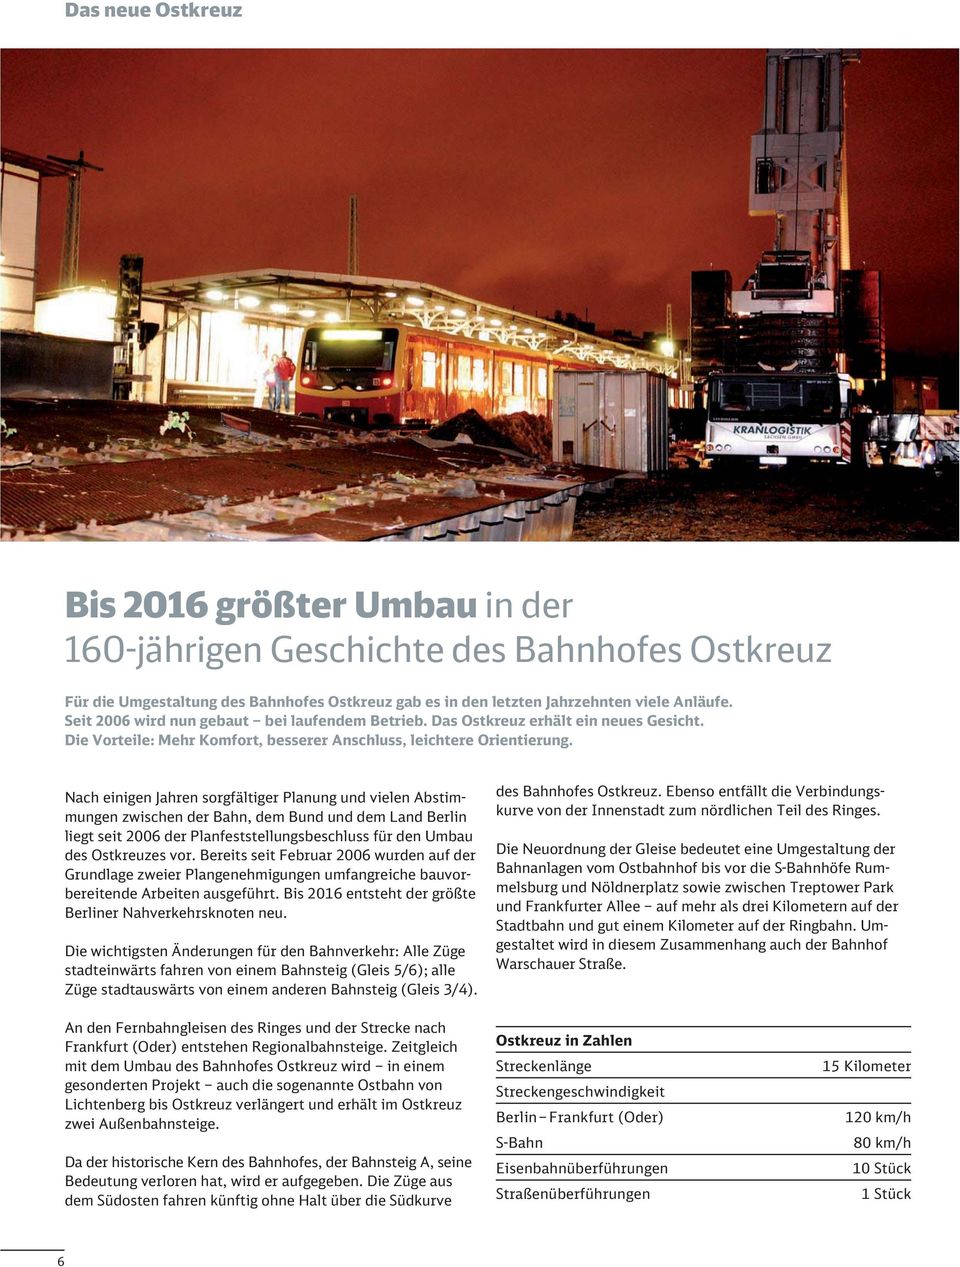 Nach einigen Jahren sorgfältiger Planung und vielen Abstimmungen zwischen der Bahn, dem Bund und dem Land Berlin liegt seit 2006 der Planfeststellungsbeschluss für den Umbau des Ostkreuzes vor.